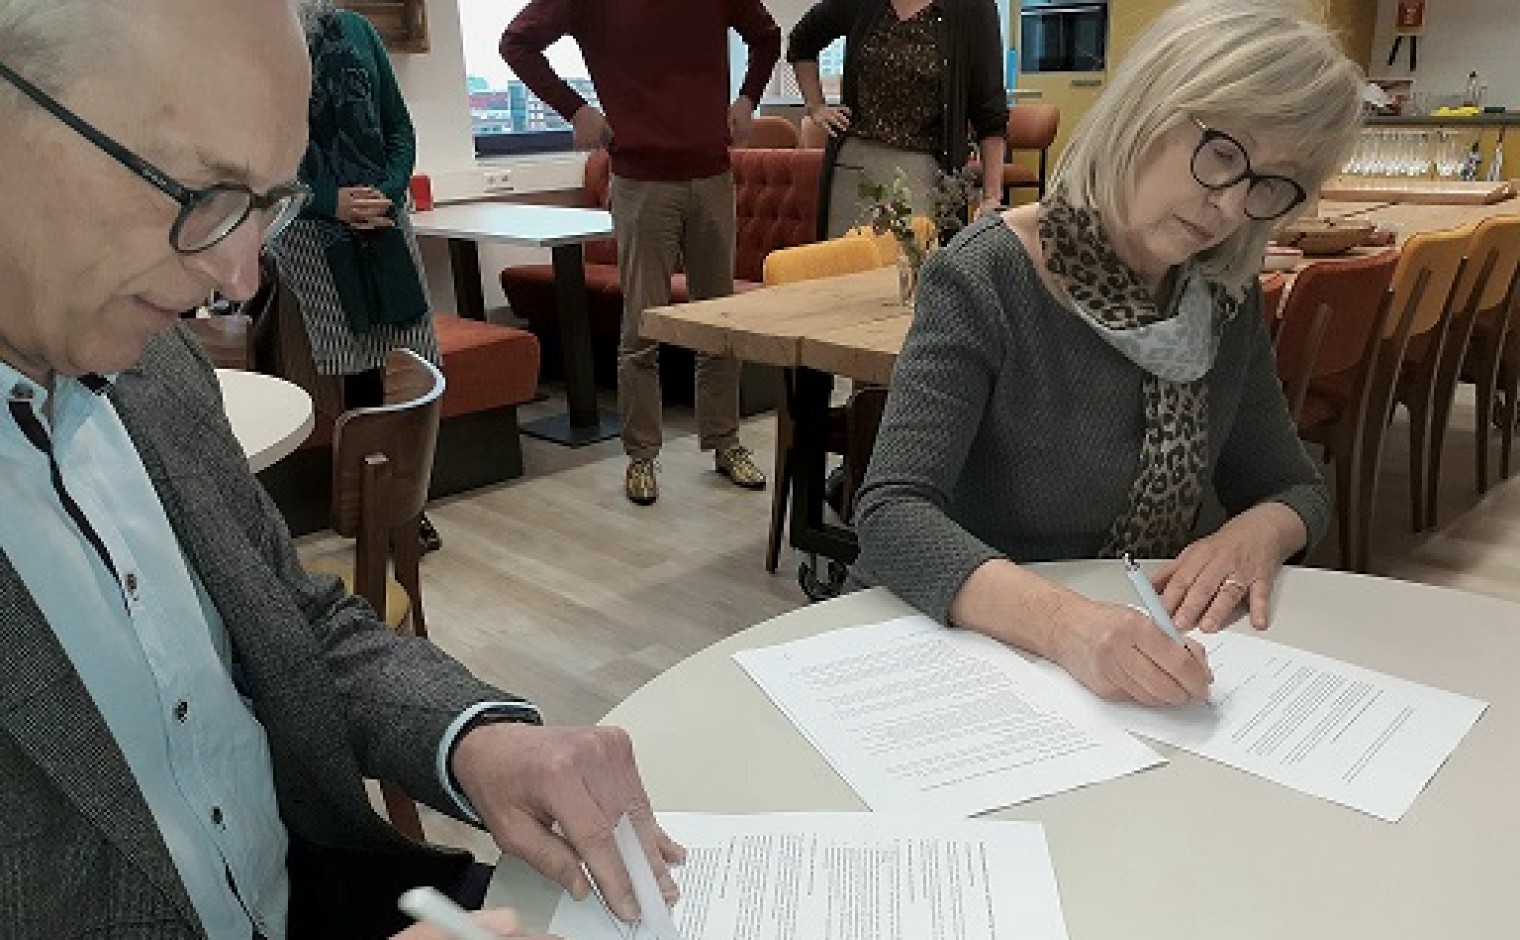 De samenwerkingsovereenkomst werd vrijdag 28 februari ondertekend.